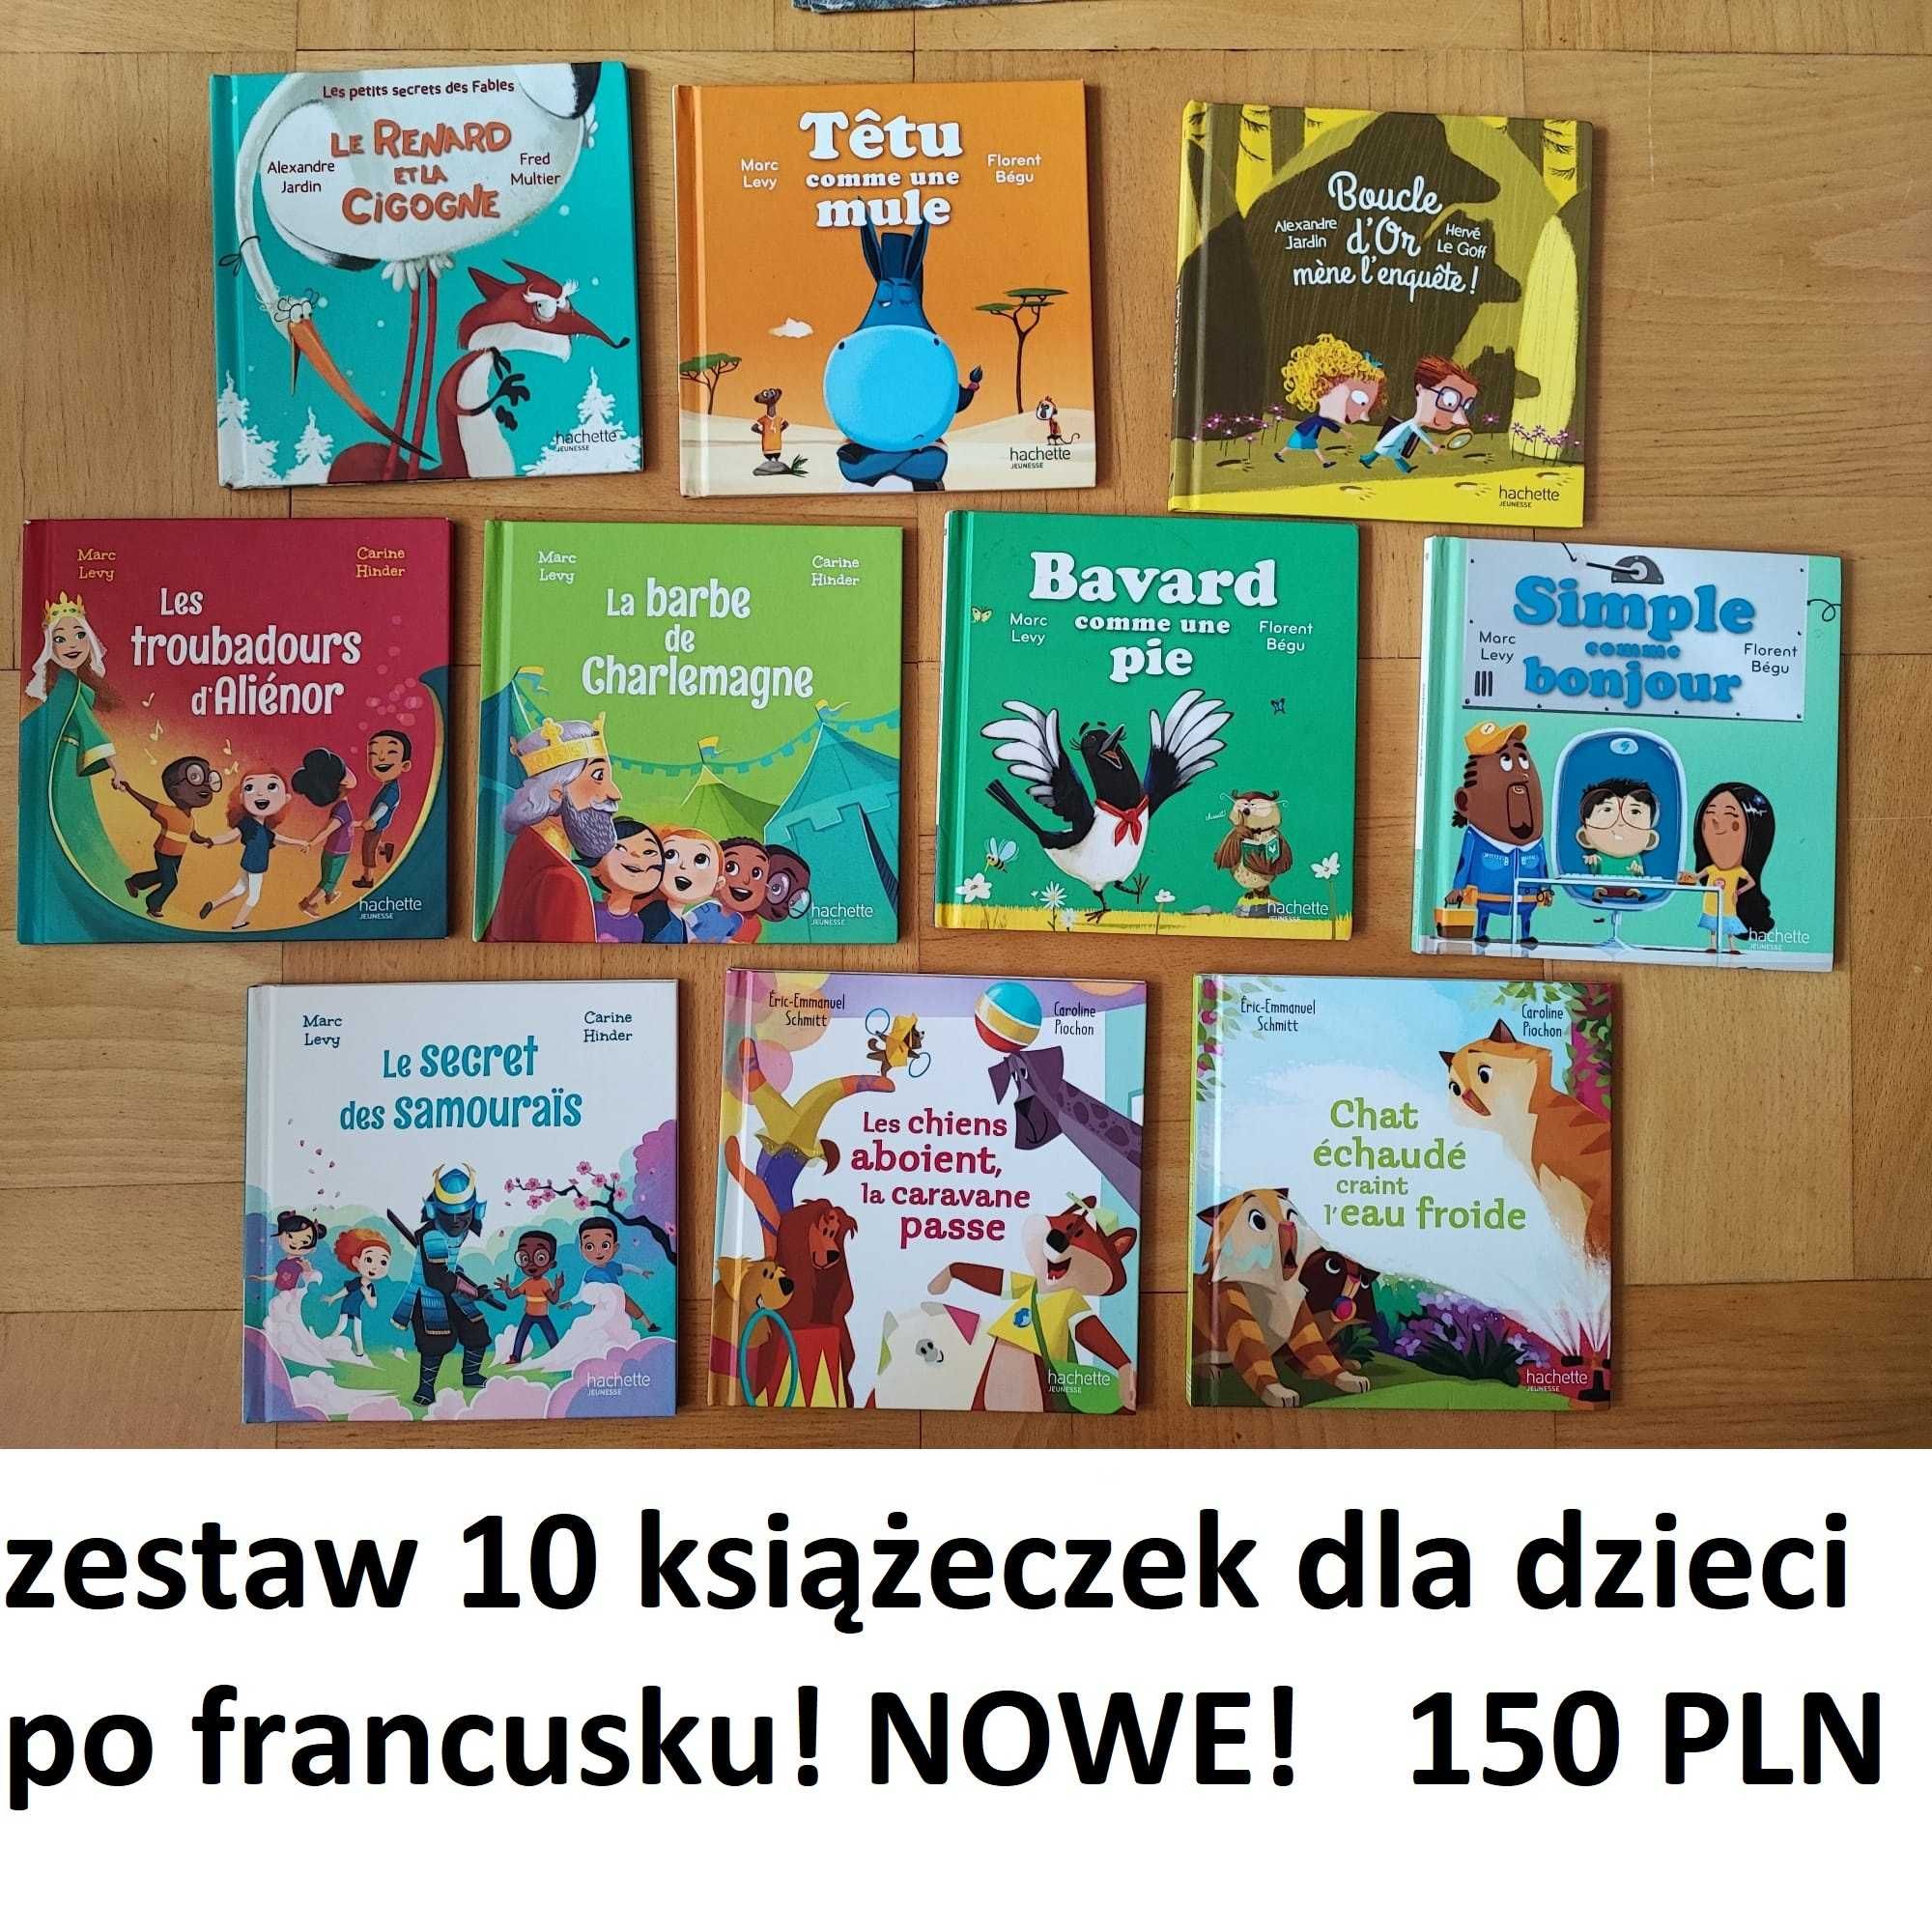 Zestaw 10 książeczek dla dzieci PO FRANCUSKU - nowe!!!